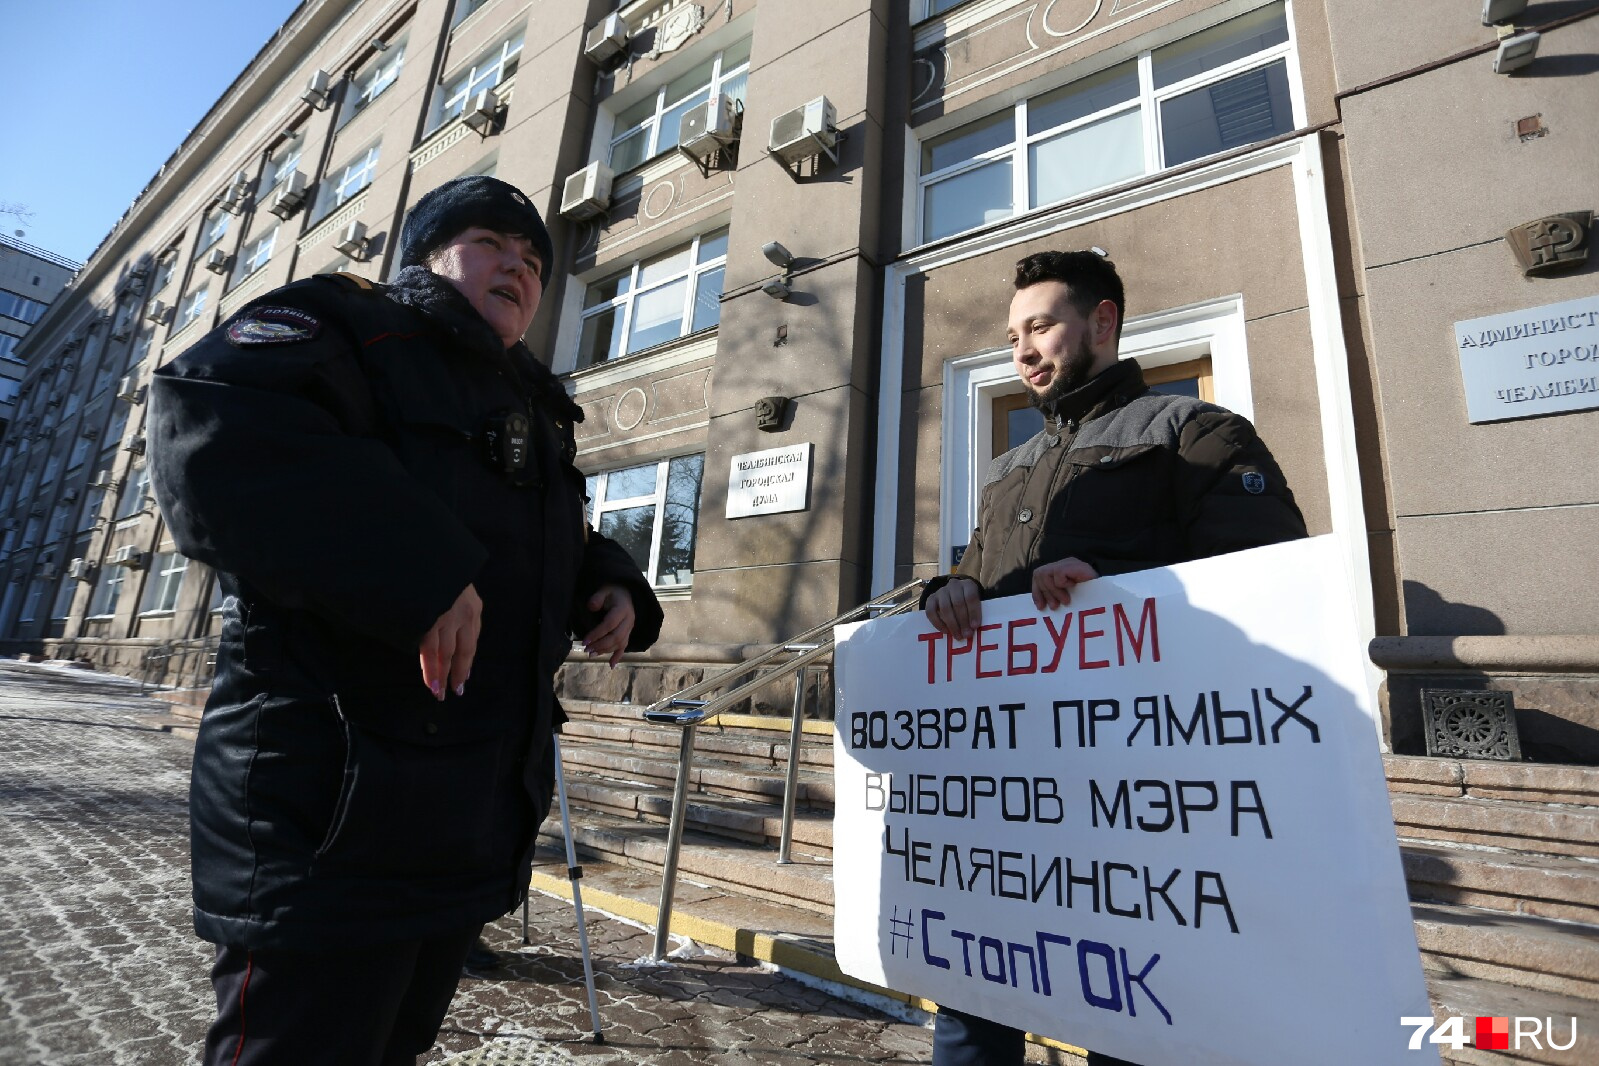 Возле Бориса Золотаревского дежурят двое полицейских, хотя одиночный пикет разрешён законом